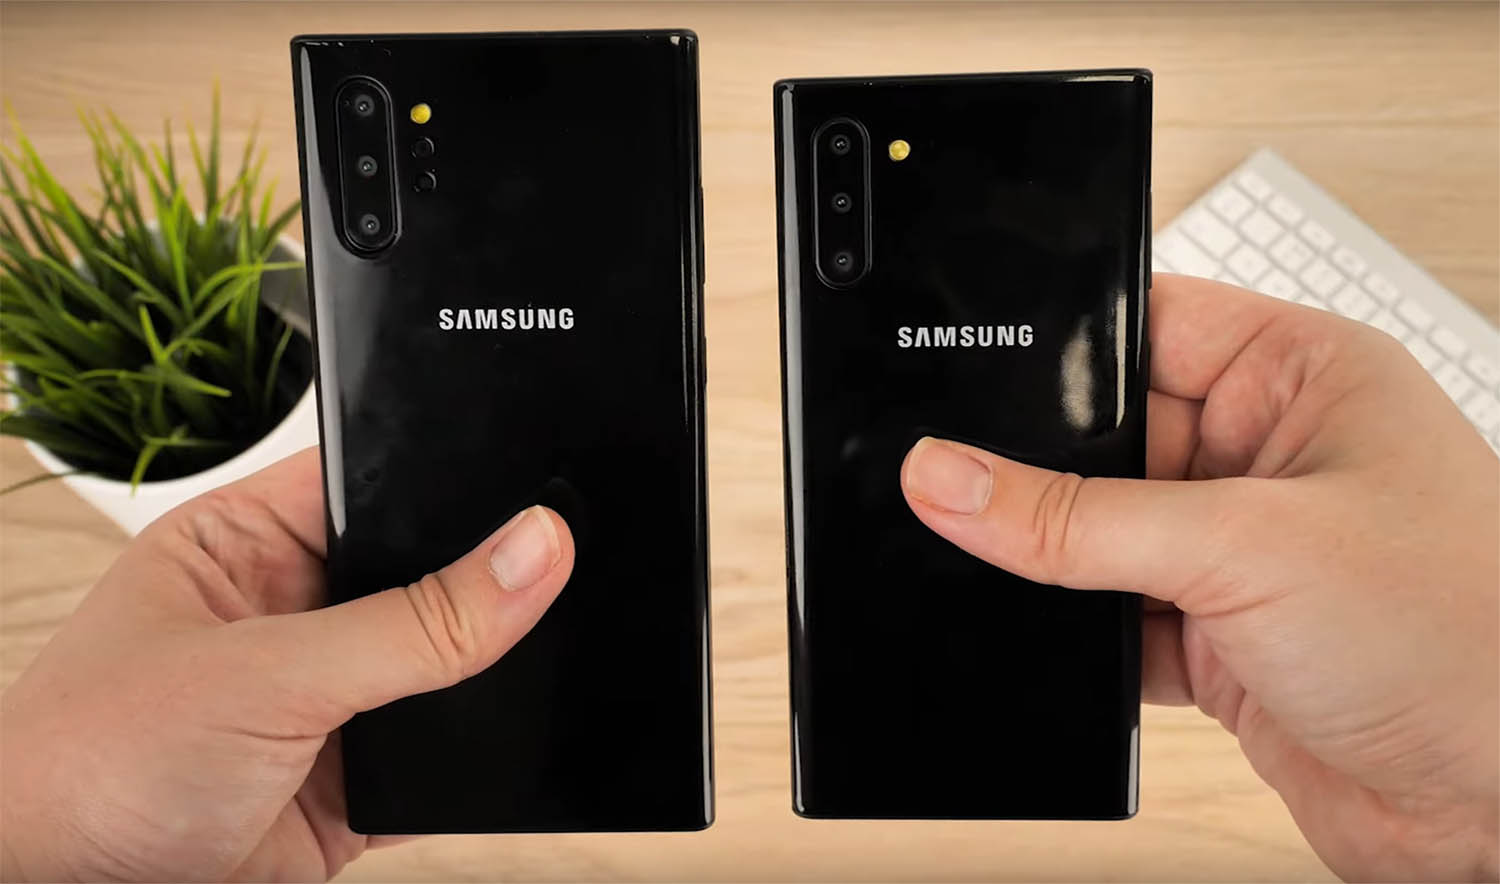 เครื่องดัมมี Samsung Galaxy Note 10 และ Note 10+ เผยให้ทราบขนาดหน้าจอ 6.3 และ 6.8 นิ้ว